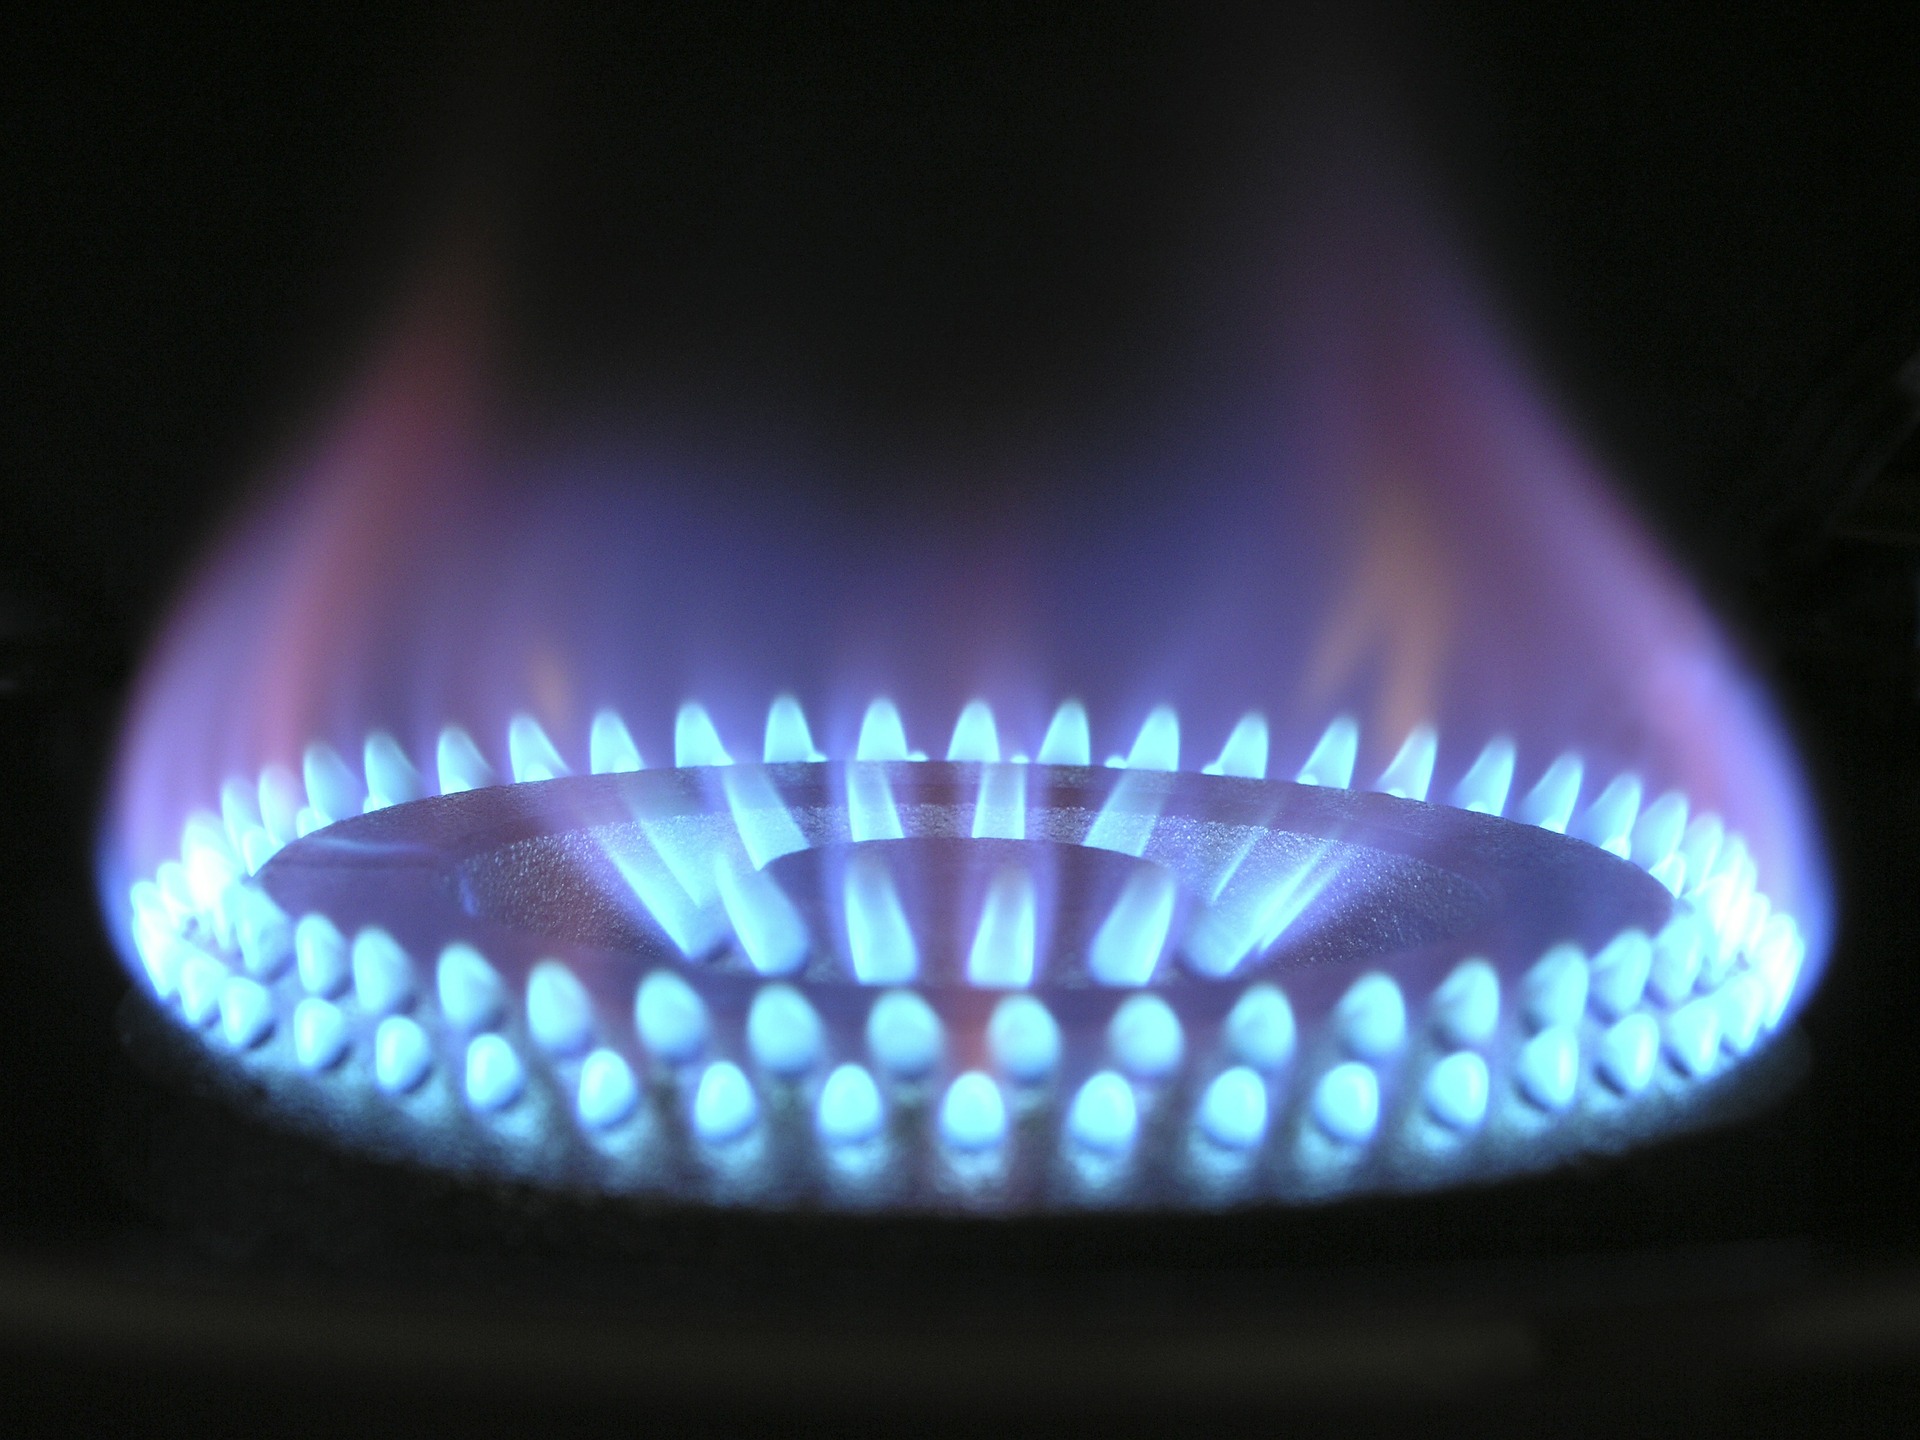 Les tarifs réglementés du gaz naturel vont augmenter de 3,25% au mois d'octobre 2018